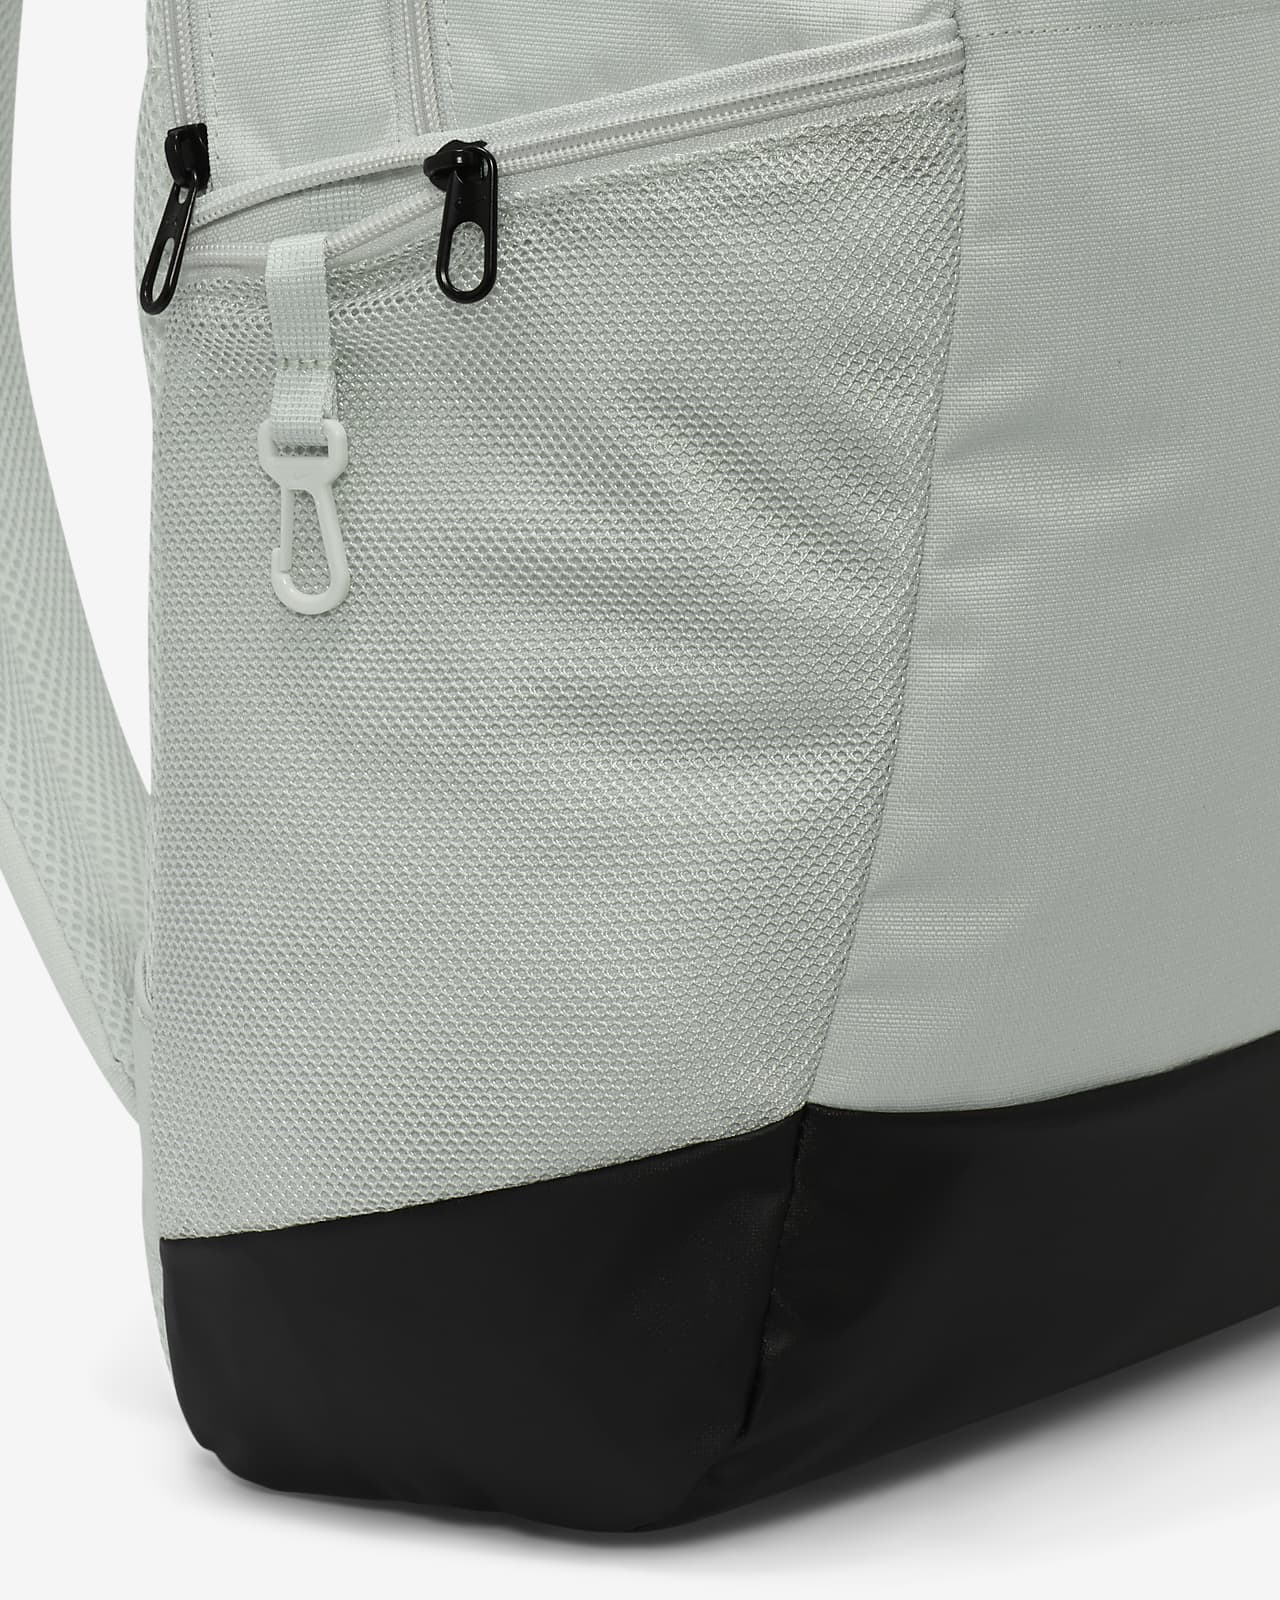  Nike Brasilia 9.5 Backpack : Clothing, Shoes & Jewelry